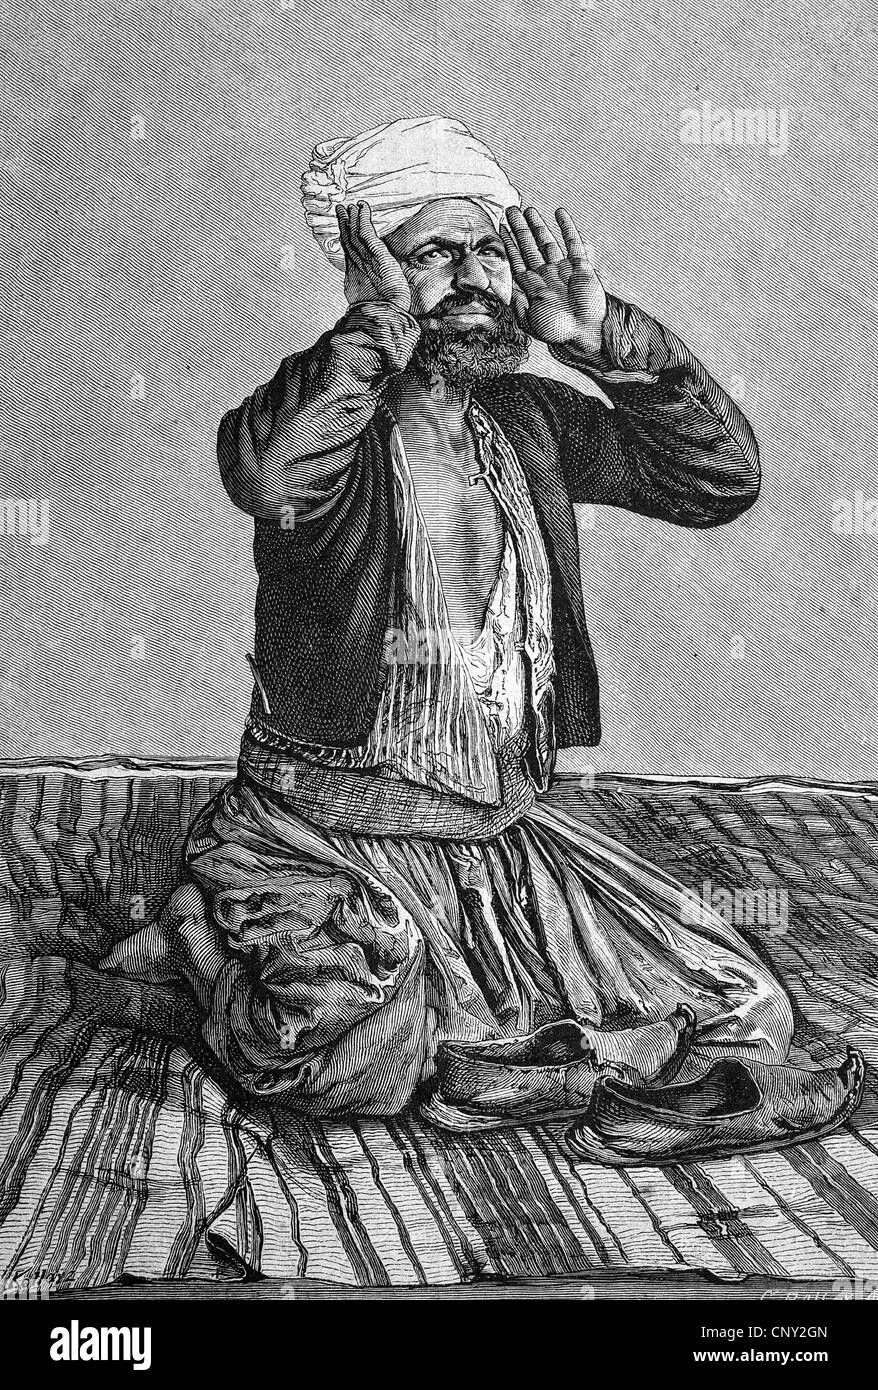 Praying Muslim, historical engraving, about 1888 Stock Photo